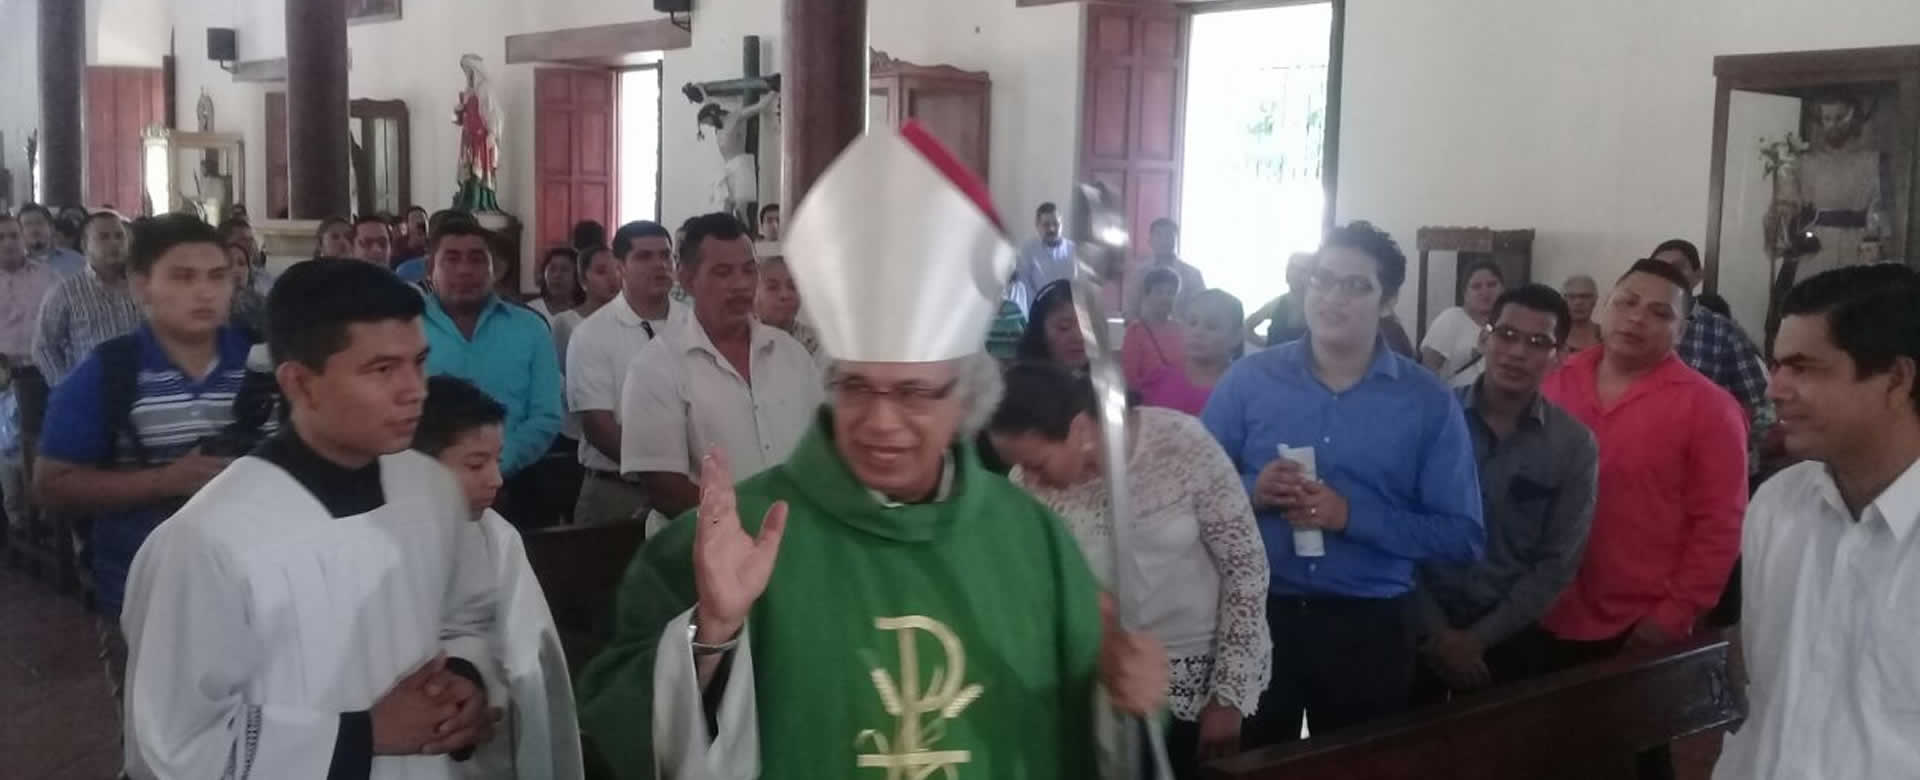 Cardenal Leopoldo Brenes confirma a 30 jóvenes en Santa Eucaristía